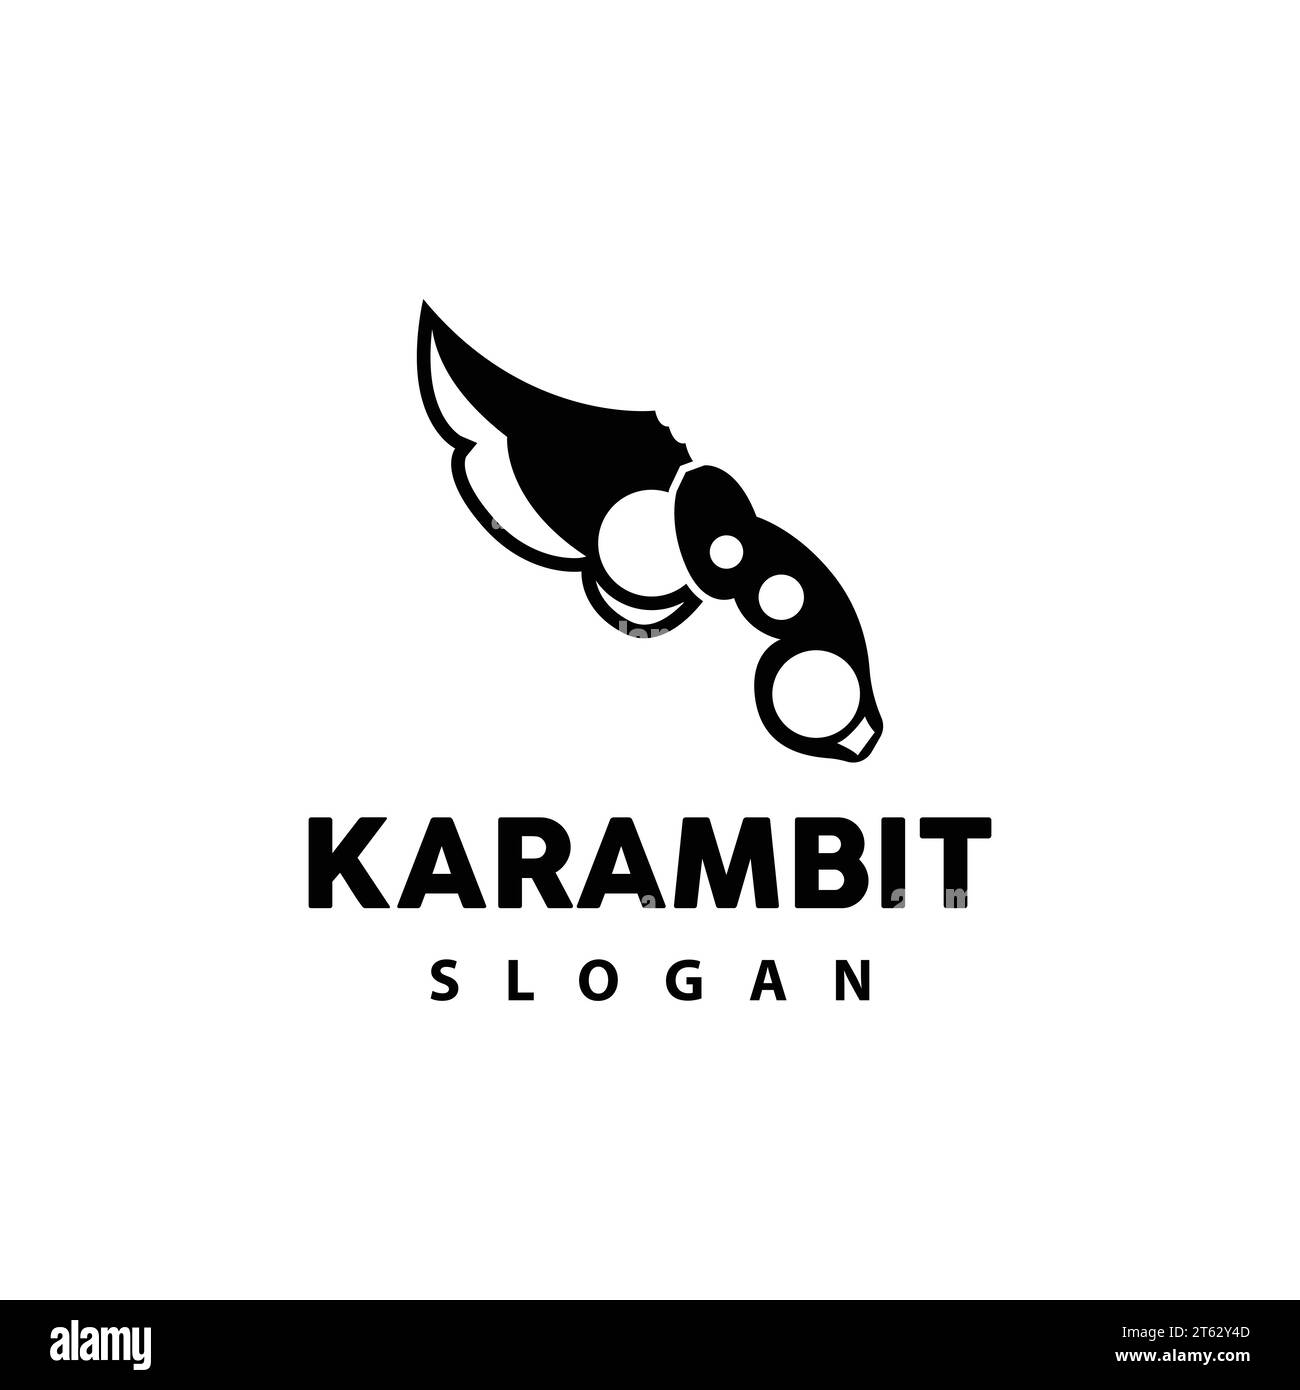 plano para diseño de cuchillo karambit - Buscar con Google